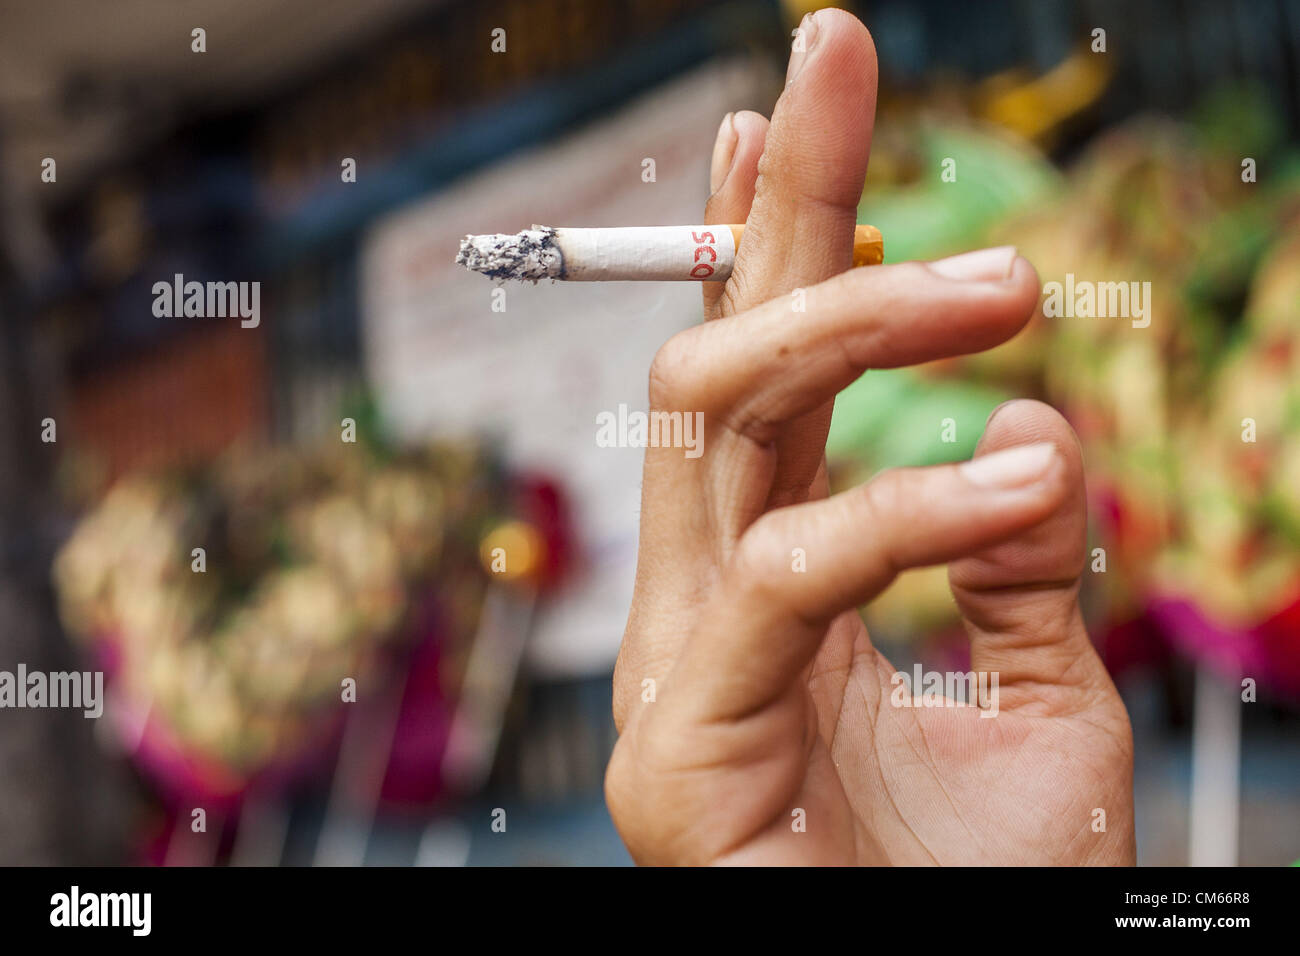 14 octobre 2012 - Bangkok, Thaïlande - Un homme est titulaire d'une cigarette tout en fumant dans une rue de Bangkok, Thaïlande. La Thaïlande et les Philippines sont impliqués dans un différend au sujet de taxes sur les cigarettes. Les responsables du commerce des Philippines allèguent que la Thaïlande une accusation injuste taxe sur les importations de cigarettes des Philippines. Les responsables thaïlandais ont répondu qu'ils ont pris la question en délibéré. Les représentants des Philippines ont déclaré qu'ils peuvent prendre la question à l'Organisation mondiale du commerce si la Thaïlande ne répond pas par le 15 octobre. (Crédit Image : © Jack Kurtz/ZUMAPRESS.com) Banque D'Images